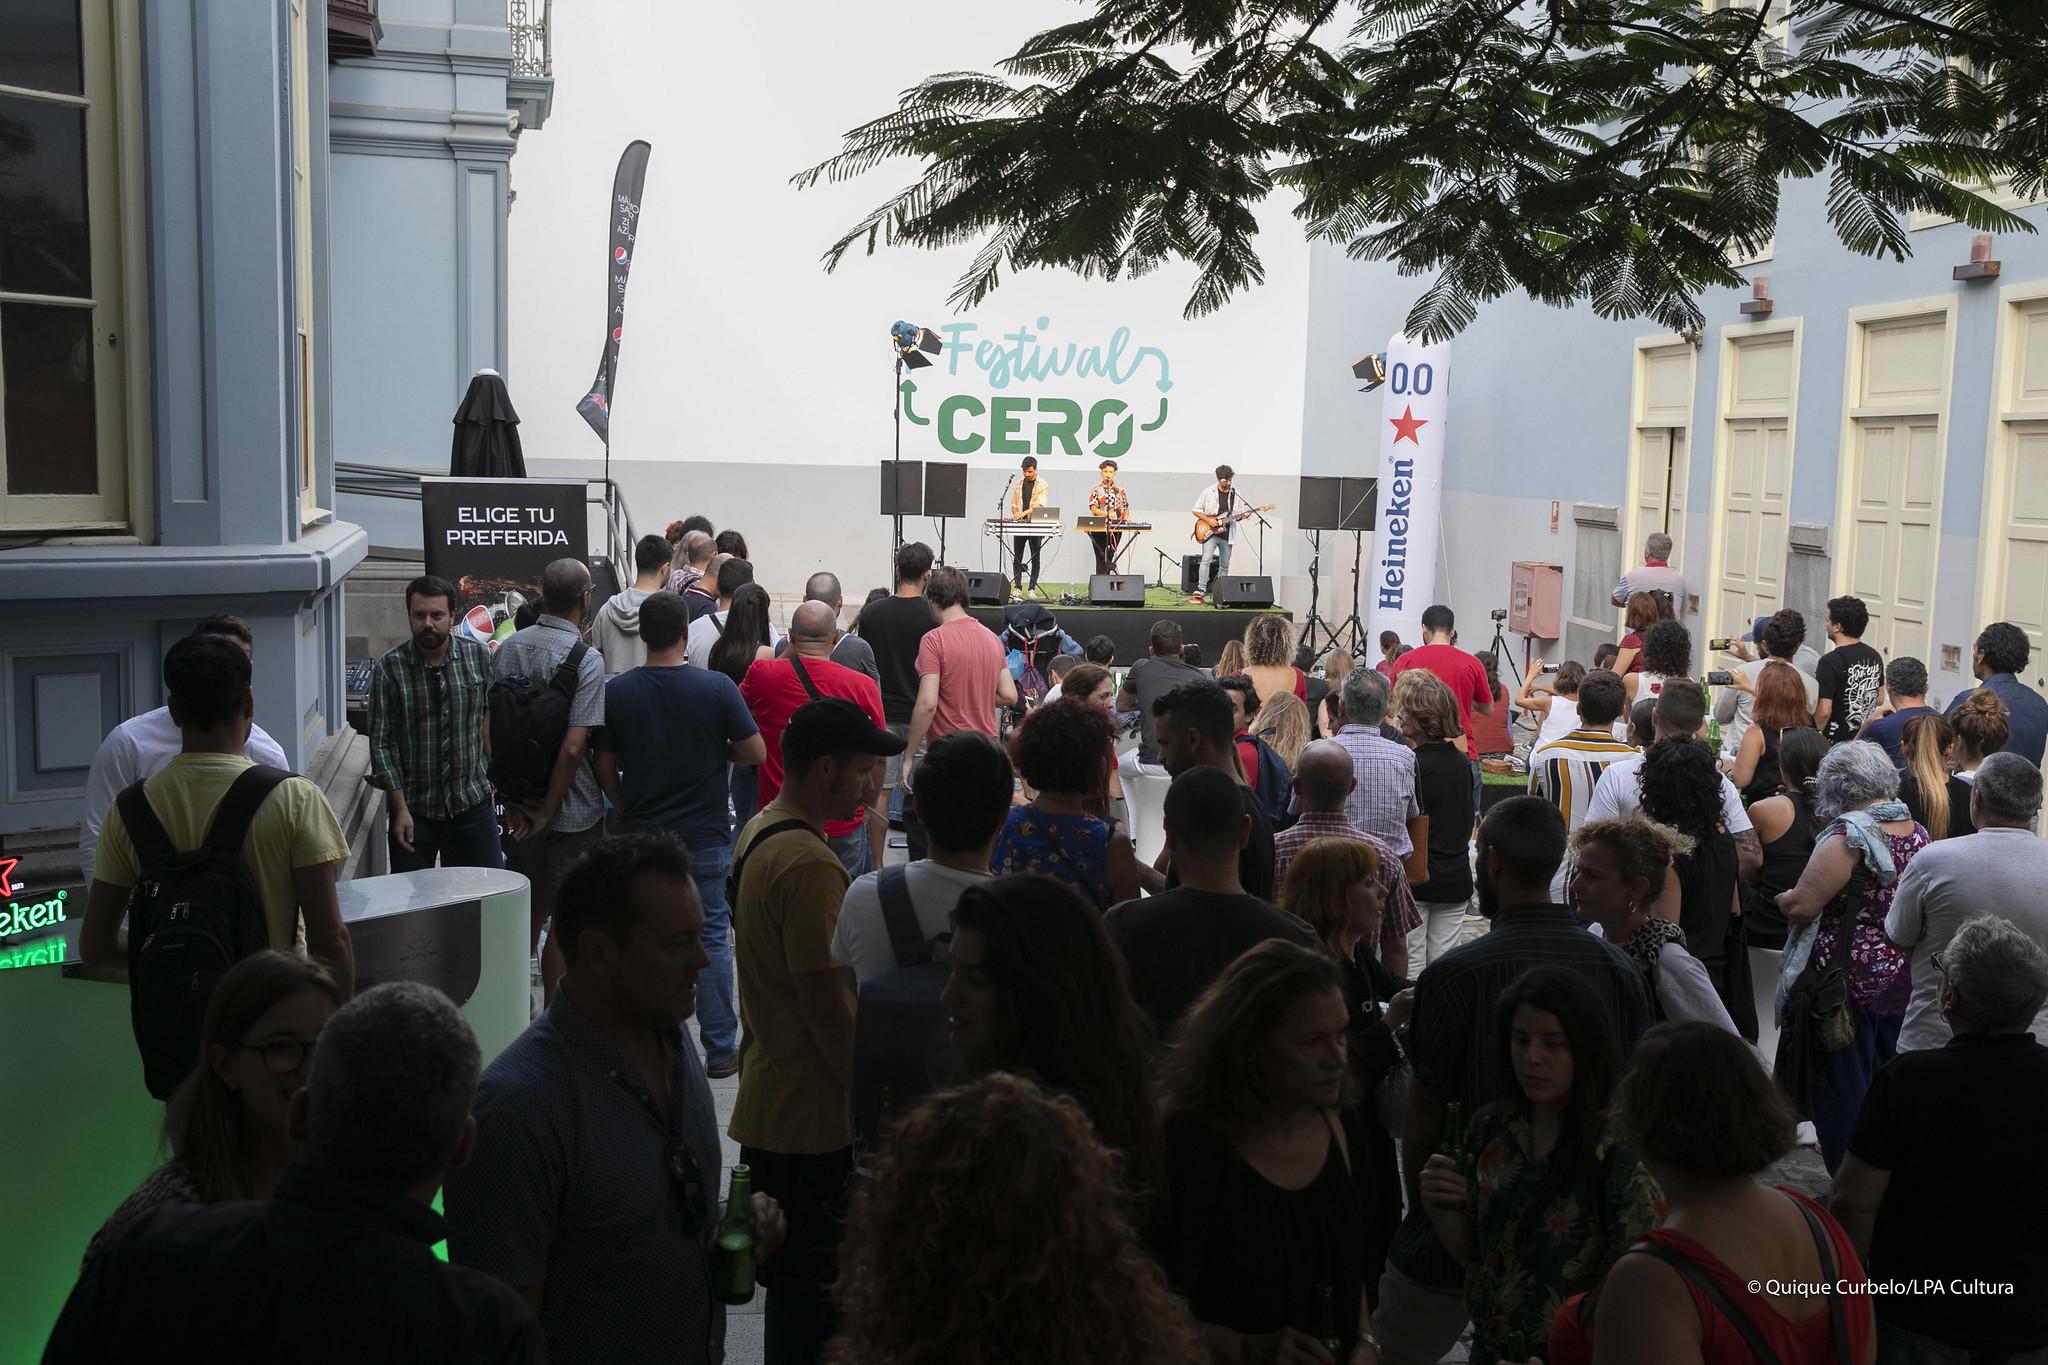 27.09.18. Las Palmas de Gran Canaria.- Presentación Festival Cero 2018. Foto Quique Curbelo